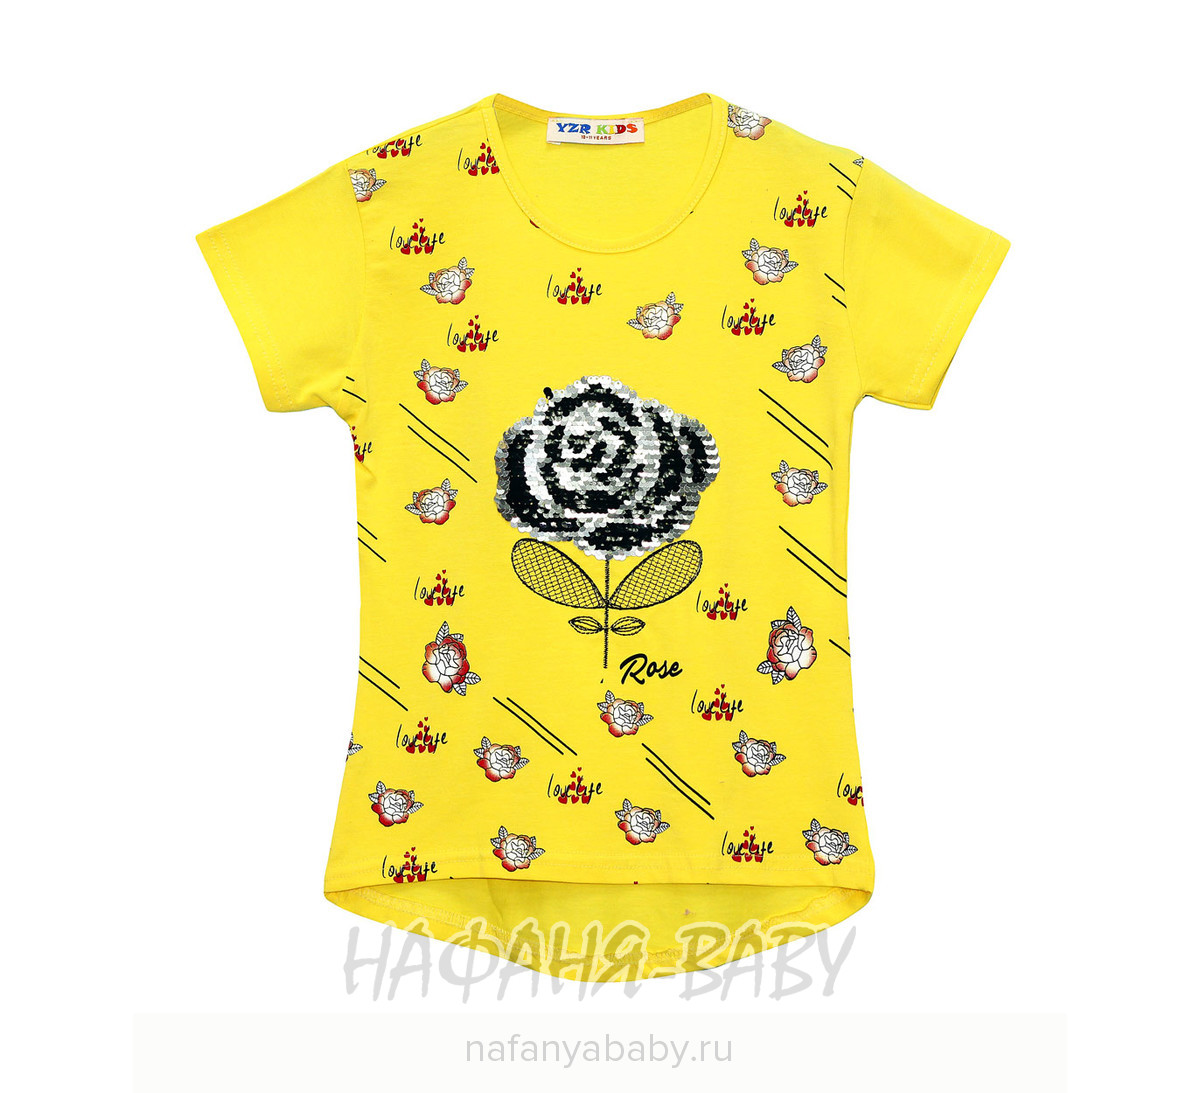 Детская футболка YZR, купить в интернет магазине Нафаня. арт: 2202.